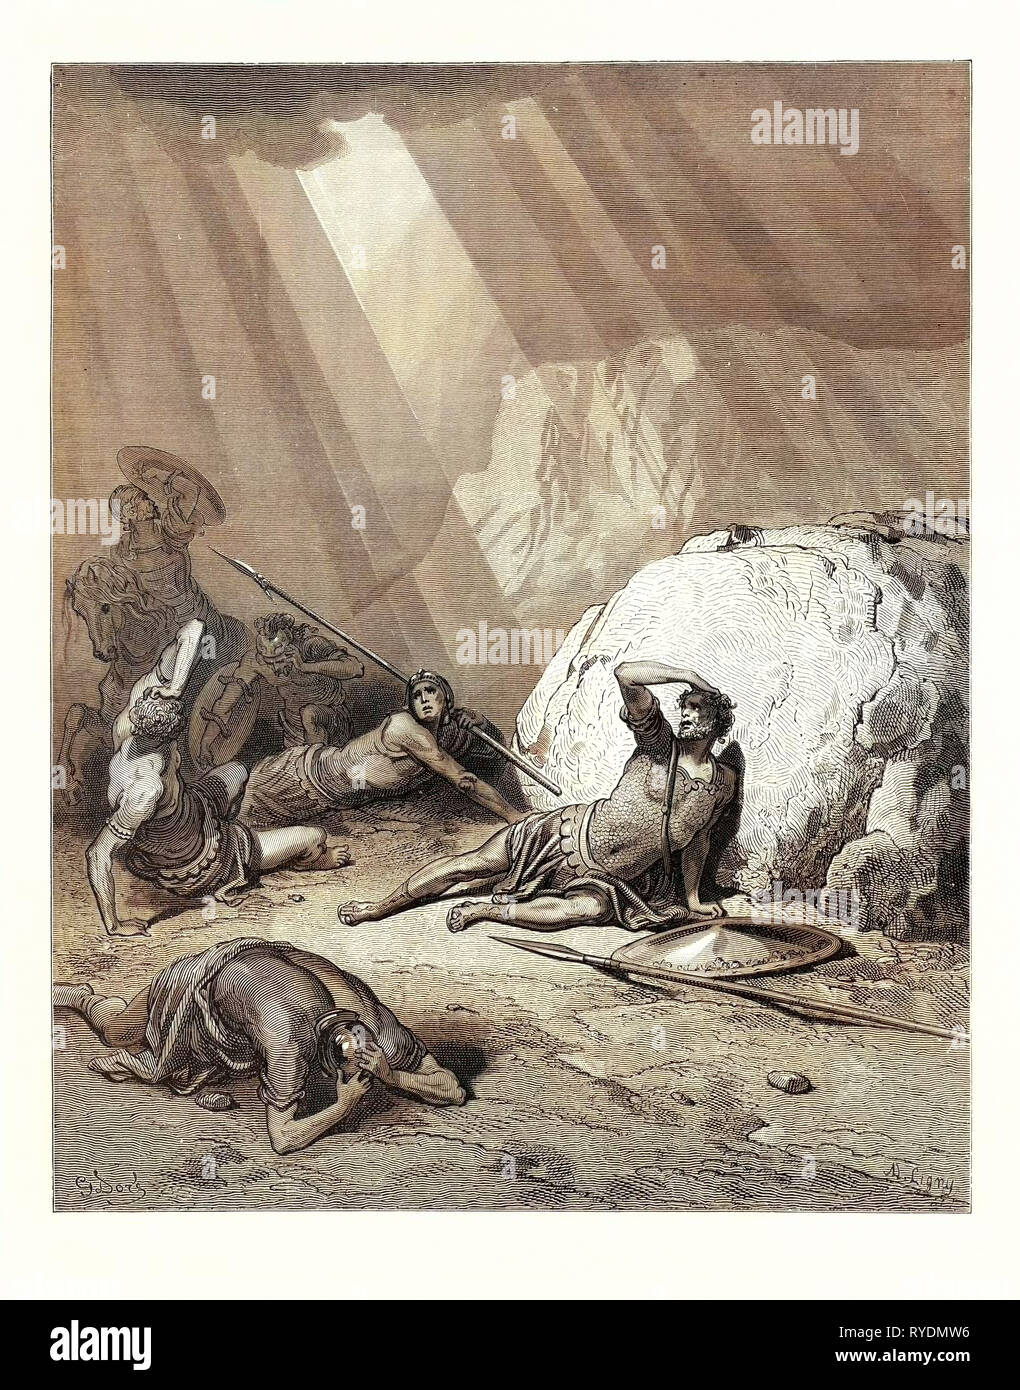 Die Bekehrung des hl. Paulus, Apostelgeschichte 9:1-6 von Gustave Doré, 1832-1883, Französisch. Kunst, Künstler, Romantik, Farbe, Farbe Gravur Stockfoto